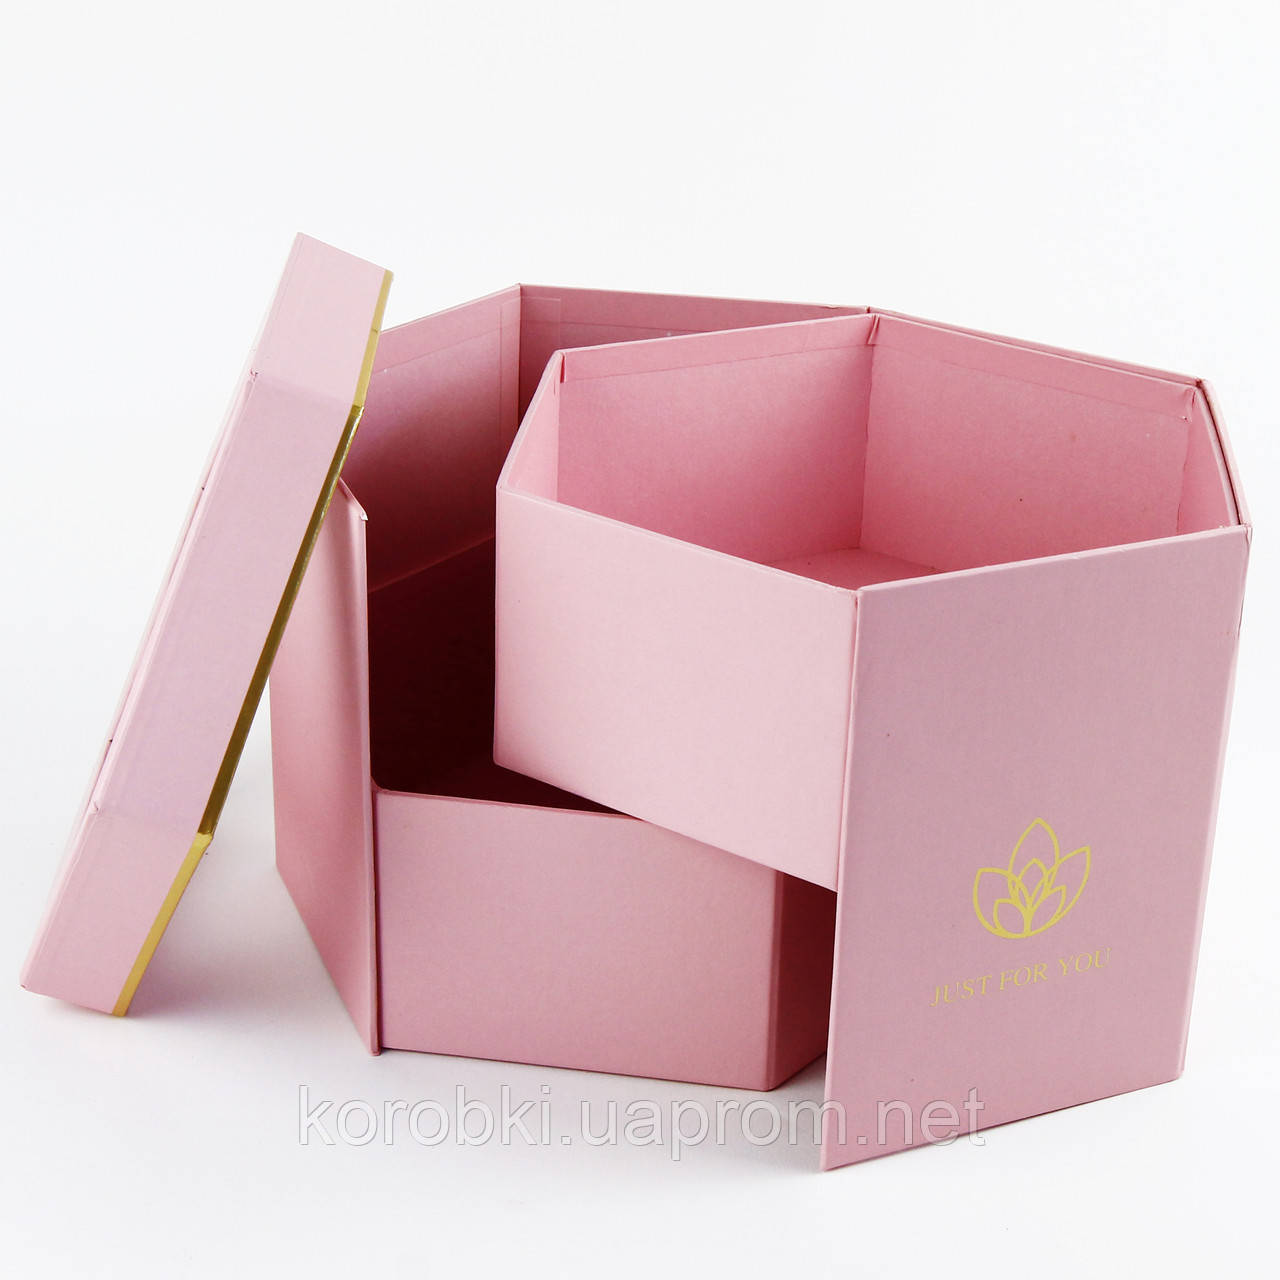 1 Подарочная коробка цветочная с выдвижными секциями - купить по лучшей цене в Киеве от компании 